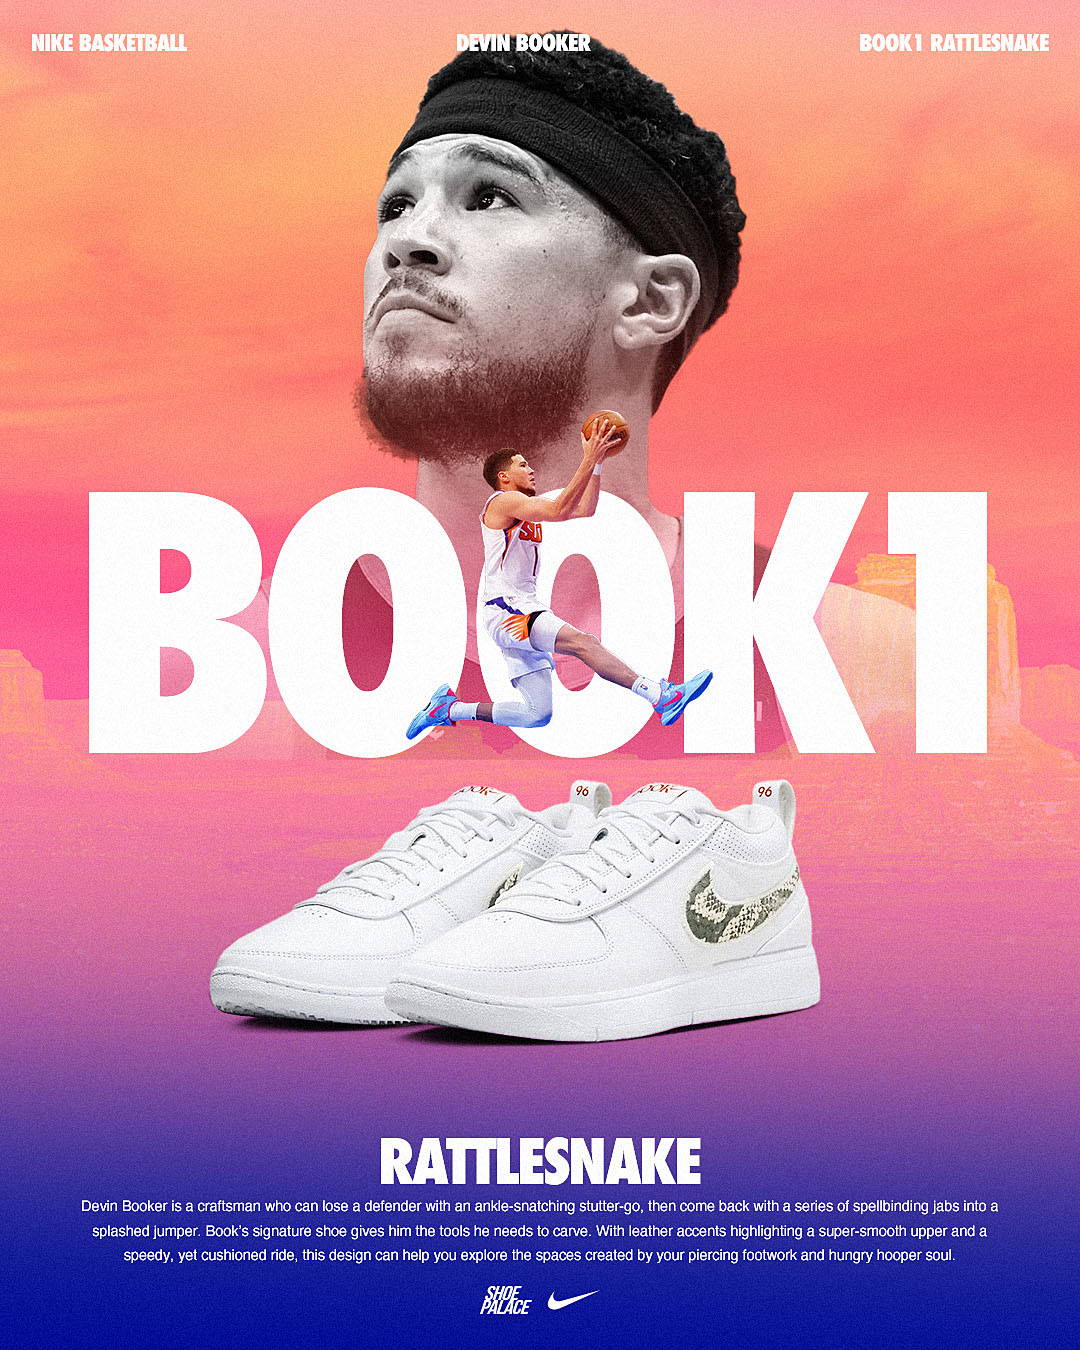 book 1 rattlesnake